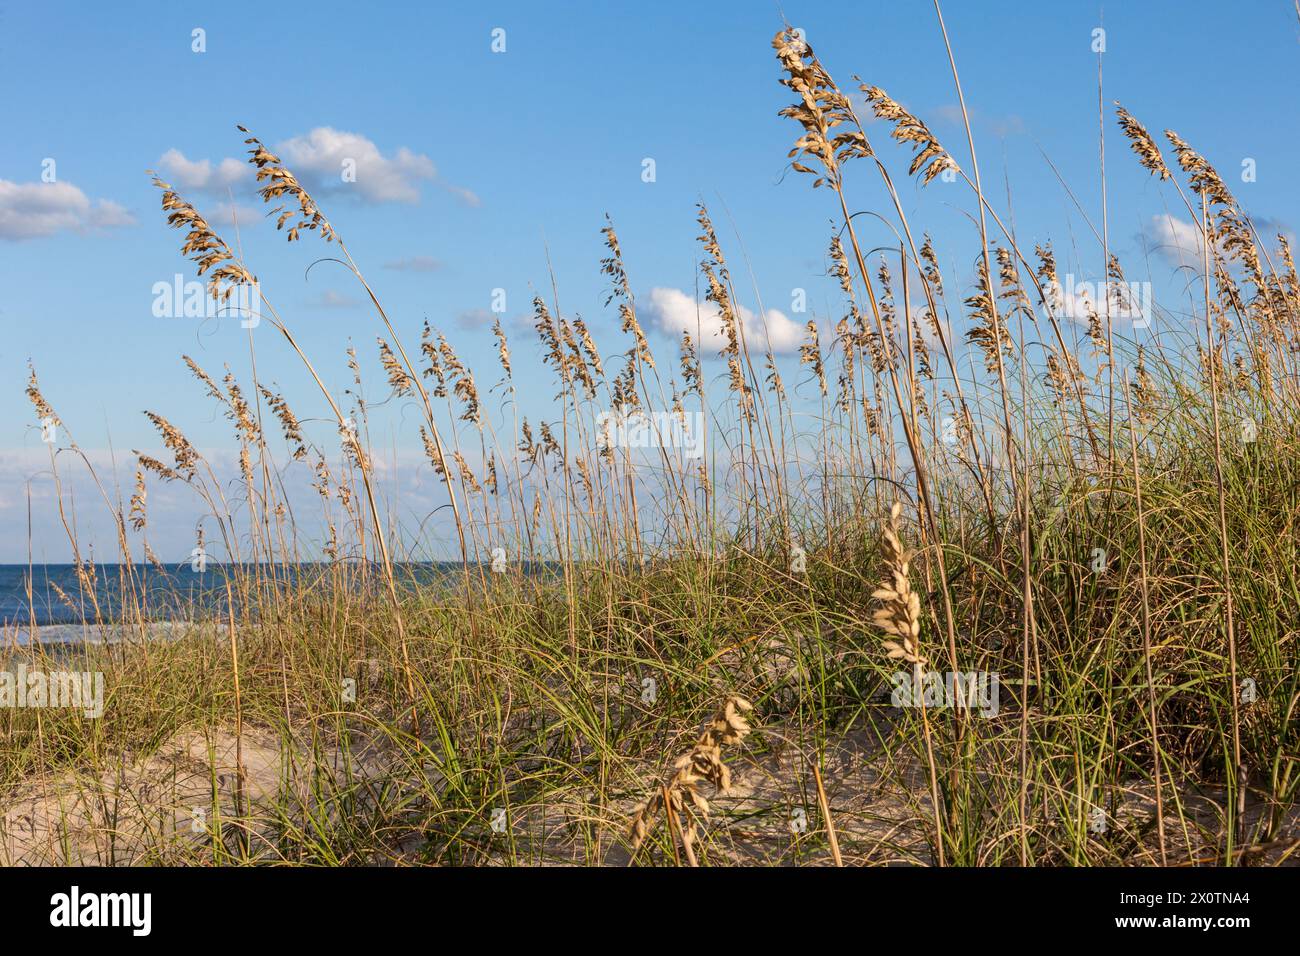 Outer Banks, North Carolina. Mare di avena (Uniola paniculata) al vento, Oceano Atlantico in background. Foto Stock